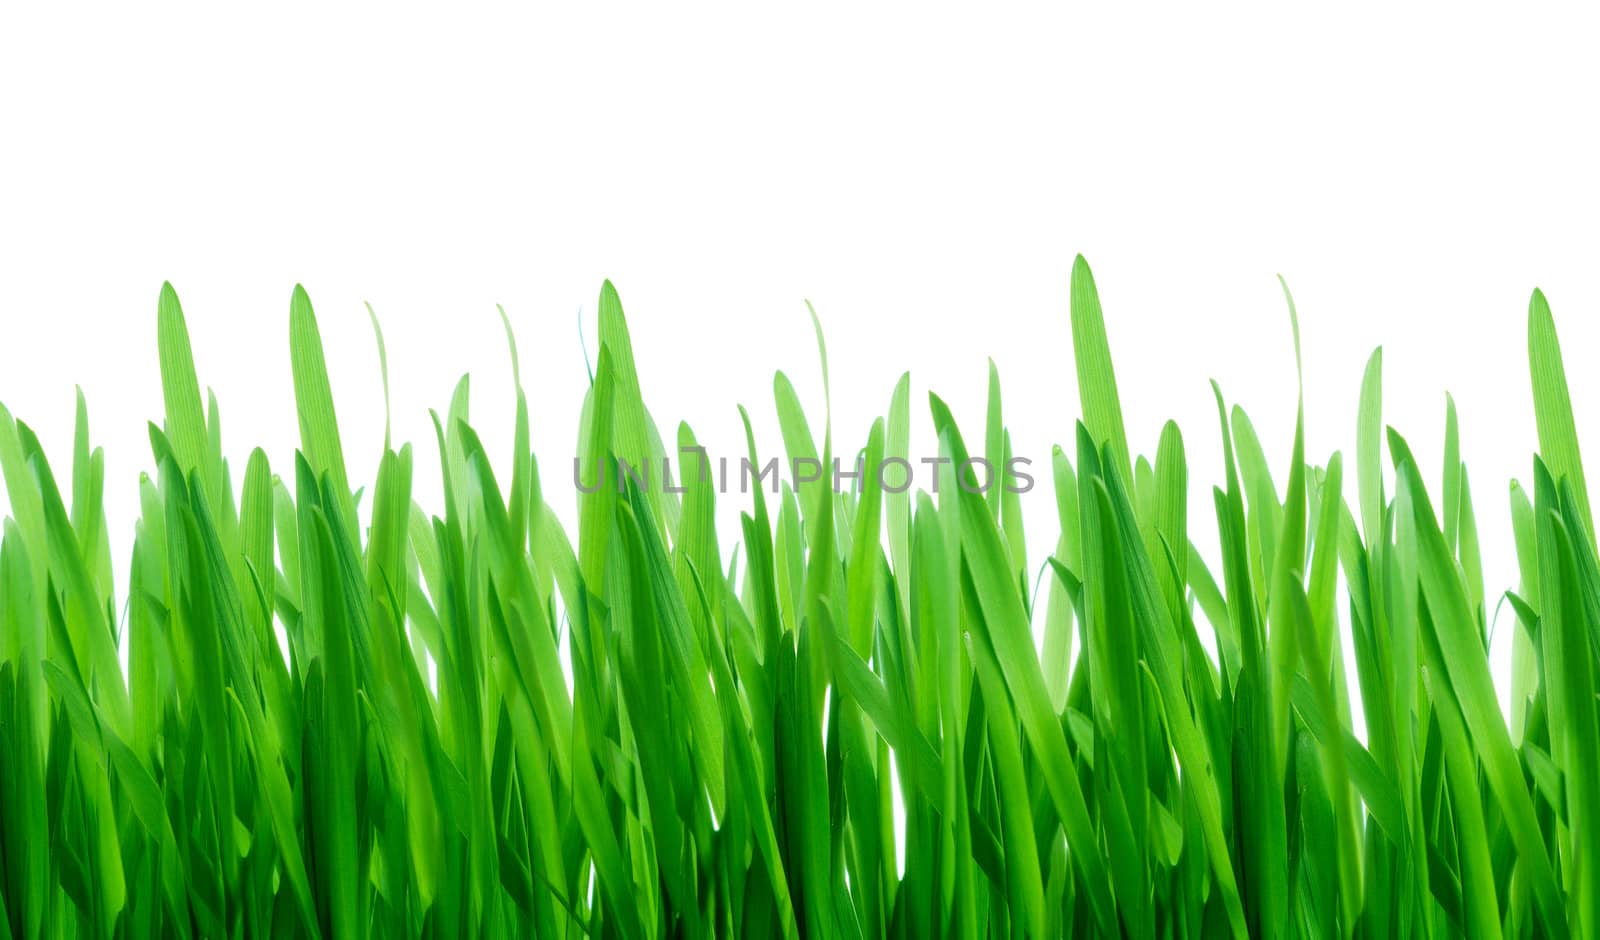 Green grass by rbv